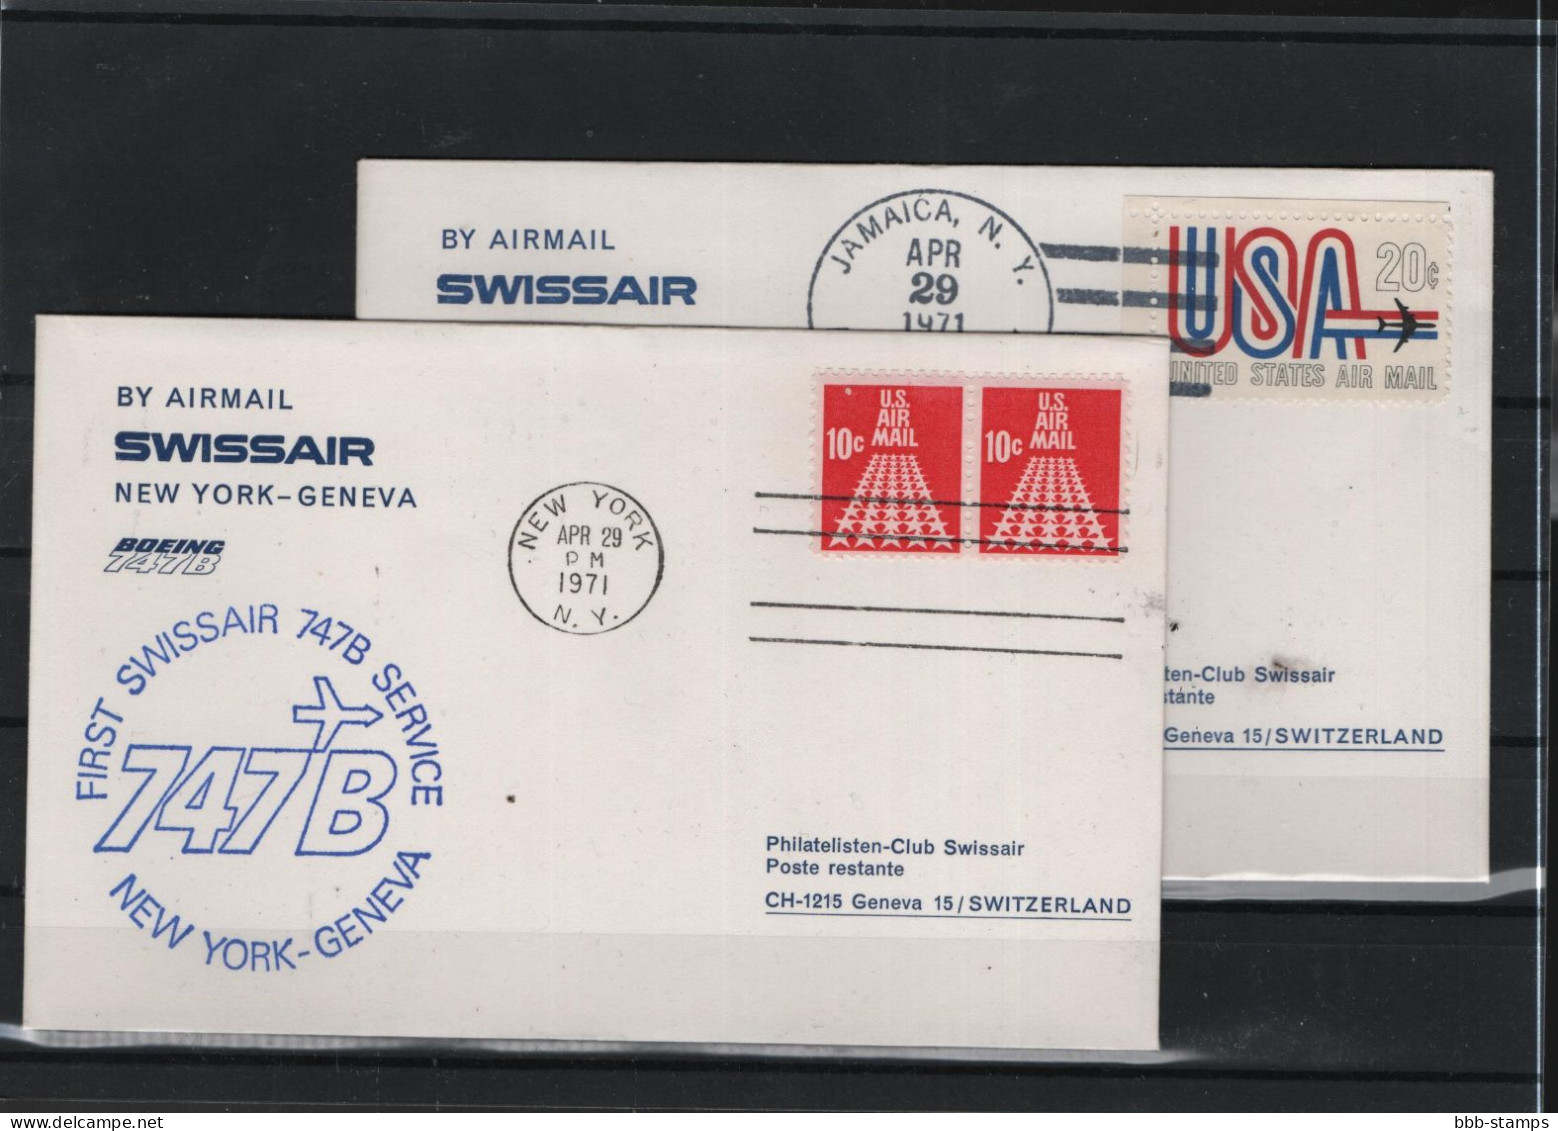 Schweiz Luftpost FFC Swissair 29.4.1971 New York - Genf - Primi Voli